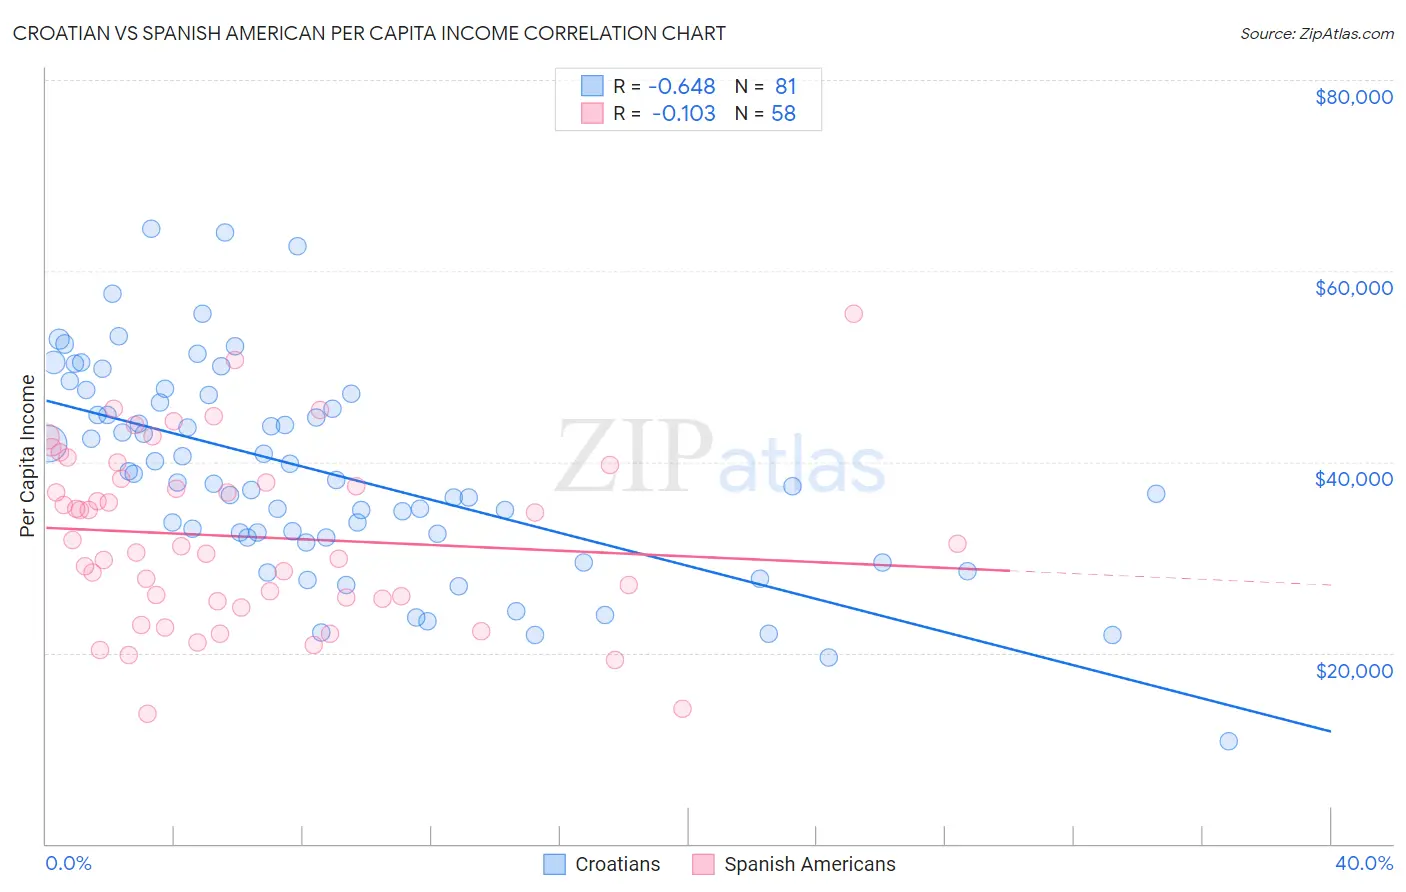 Croatian vs Spanish American Per Capita Income